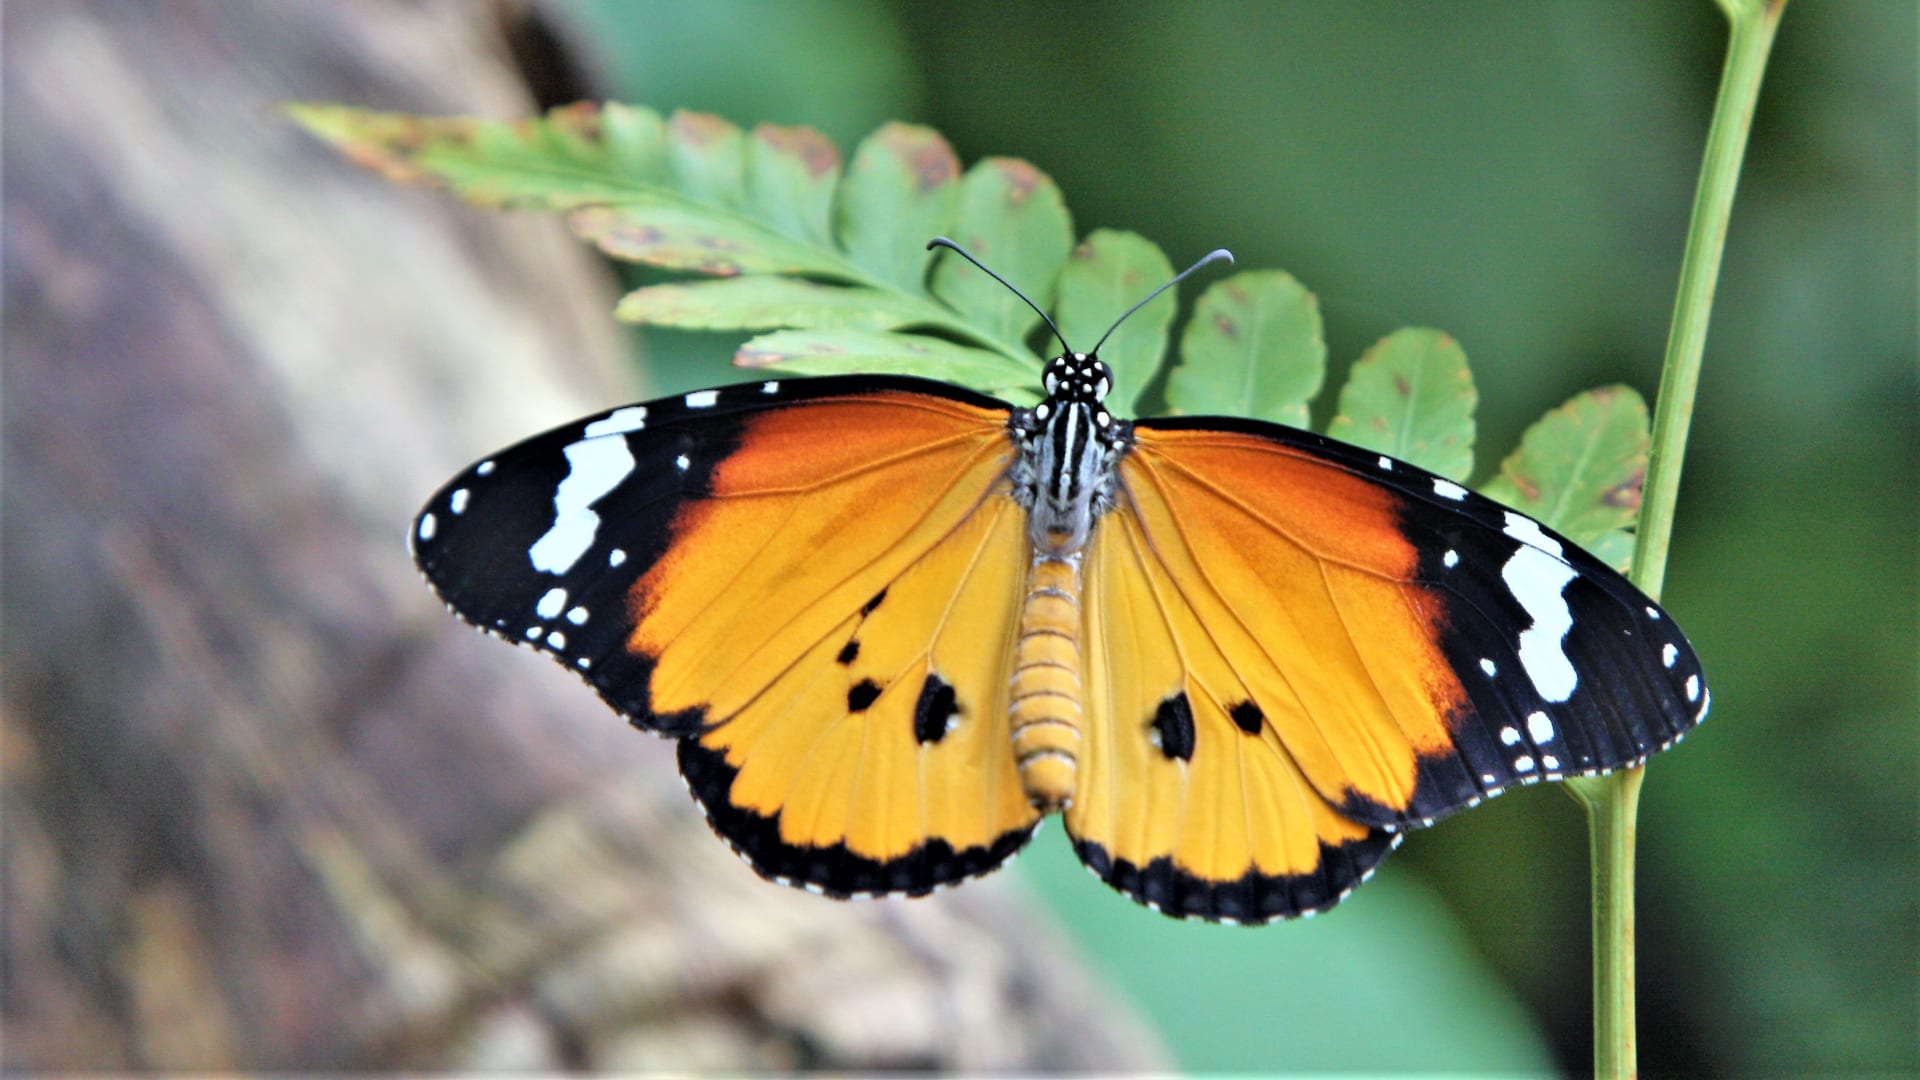 Výstava tropických motýlů ve skleníku Fata Morgana:  Danaus chrysippus 